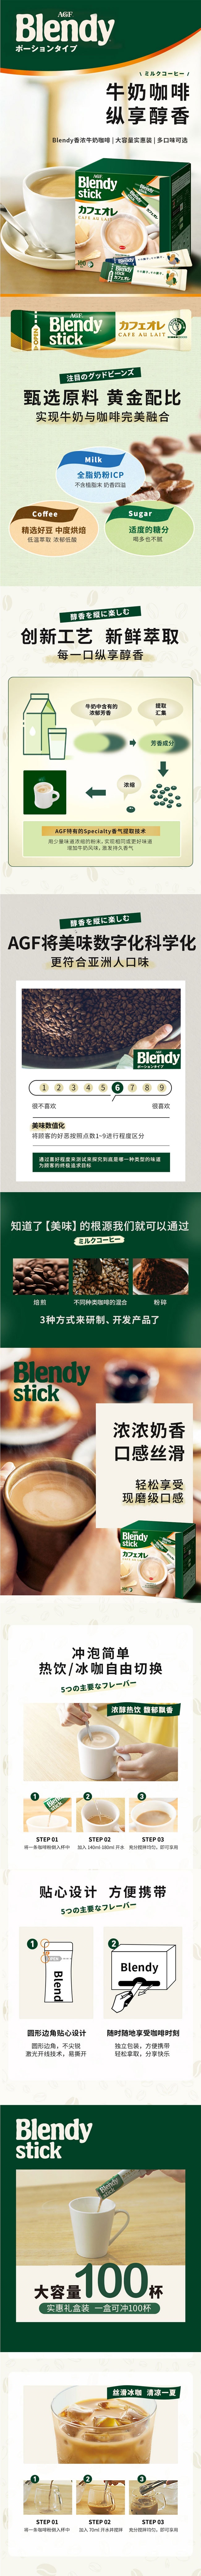 【日本直郵】AGF blendy stick 原味拿鐵即溶咖啡 27枚